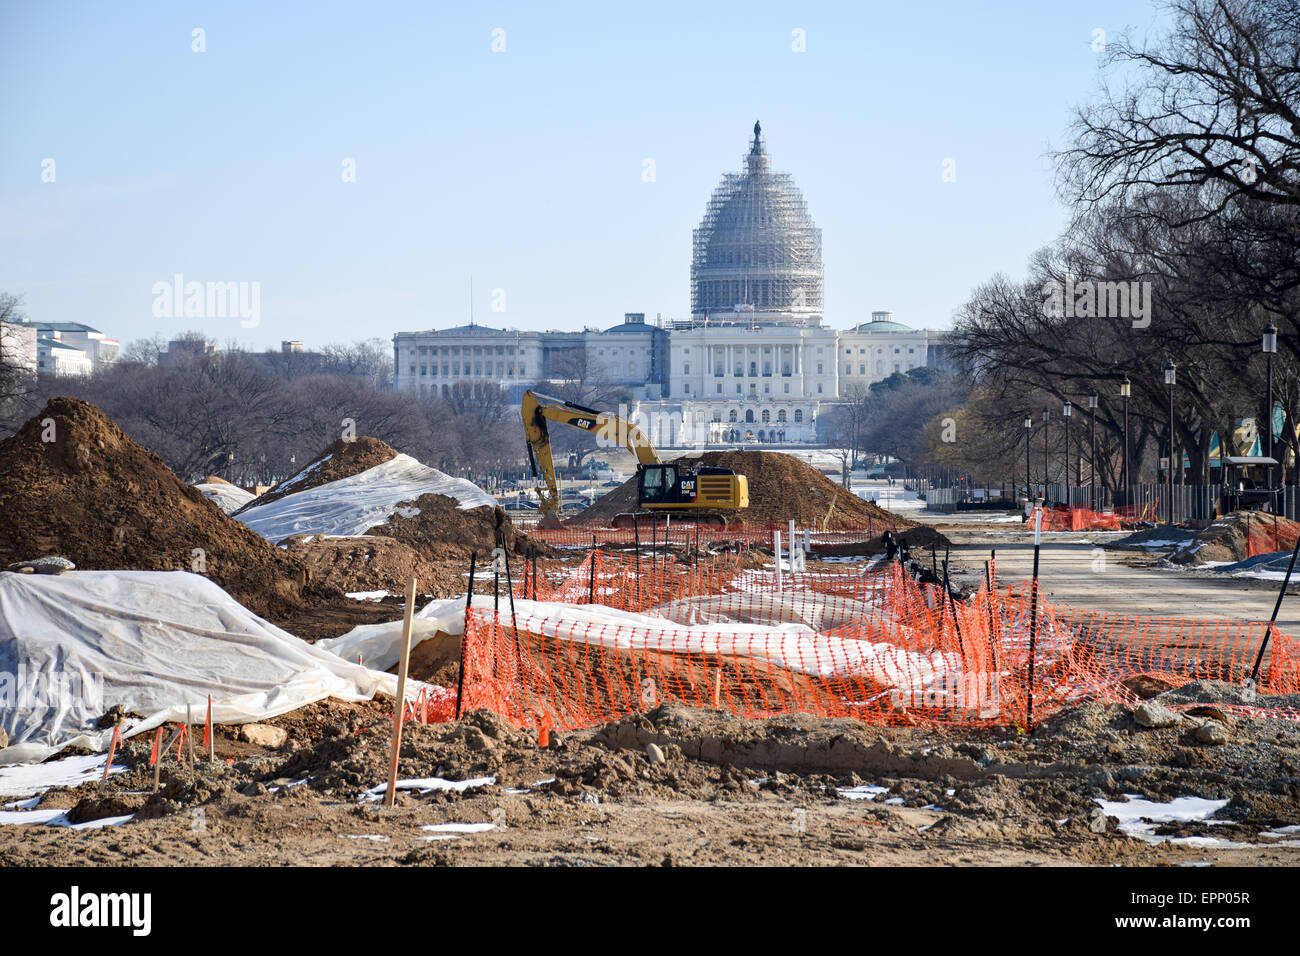 WASHINGTON DC, Stati Uniti d'America - Rinnovo su una sezione dell'estremità orientale del National Mall di Washington DC, con la cupola di U.S. Capitol Building in background coperta da impalcature come subisce le proprie riparazioni. Foto Stock